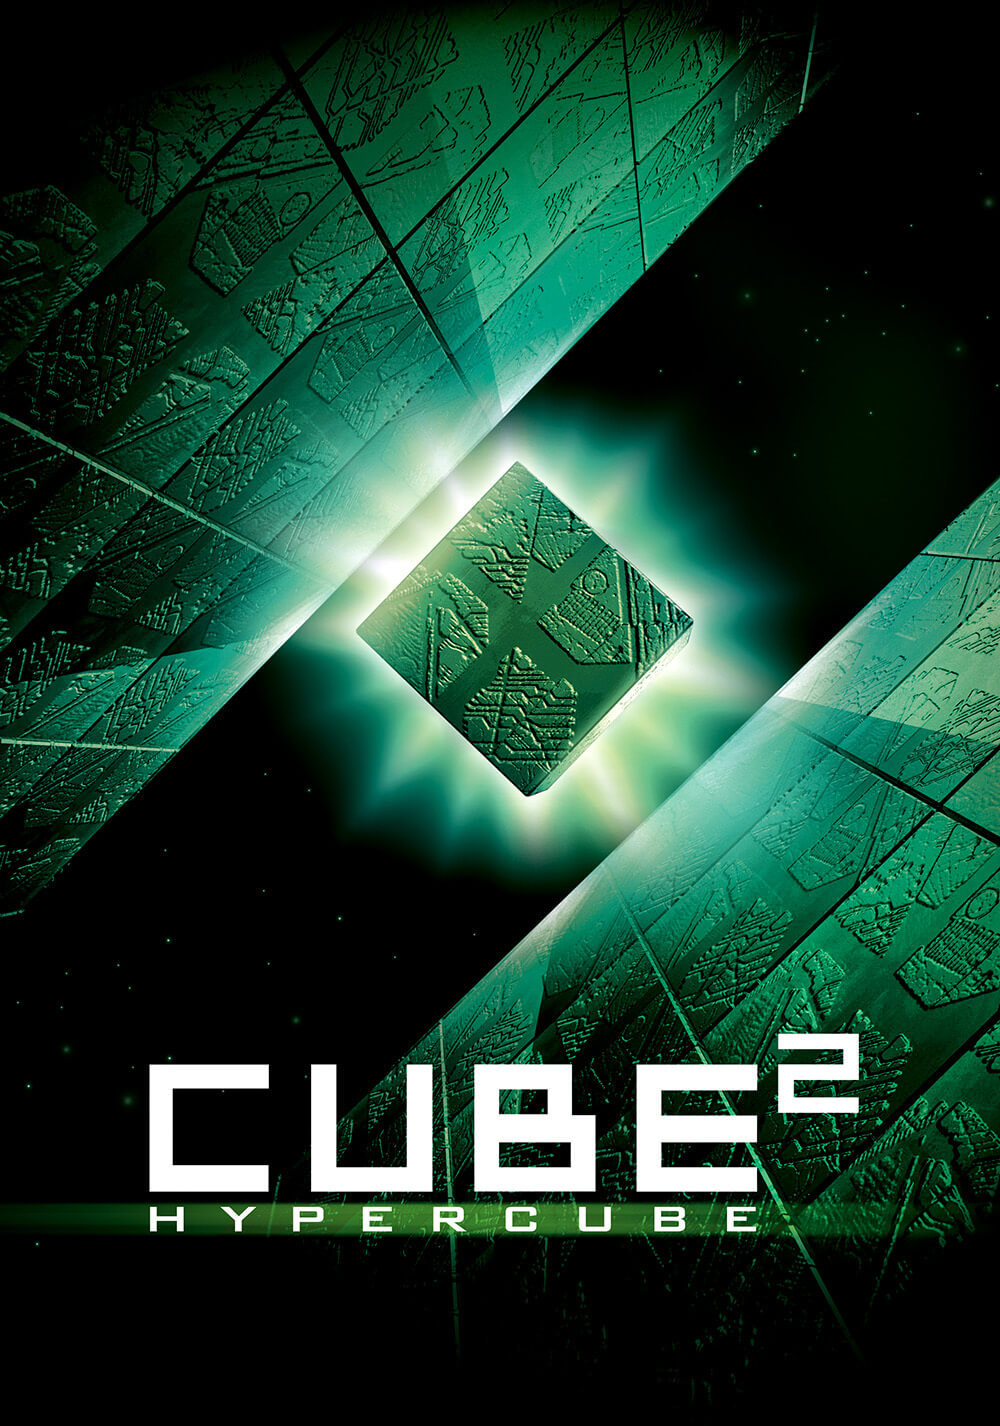 مکعب ۲: ابرمکعب (Cube²: Hypercube)